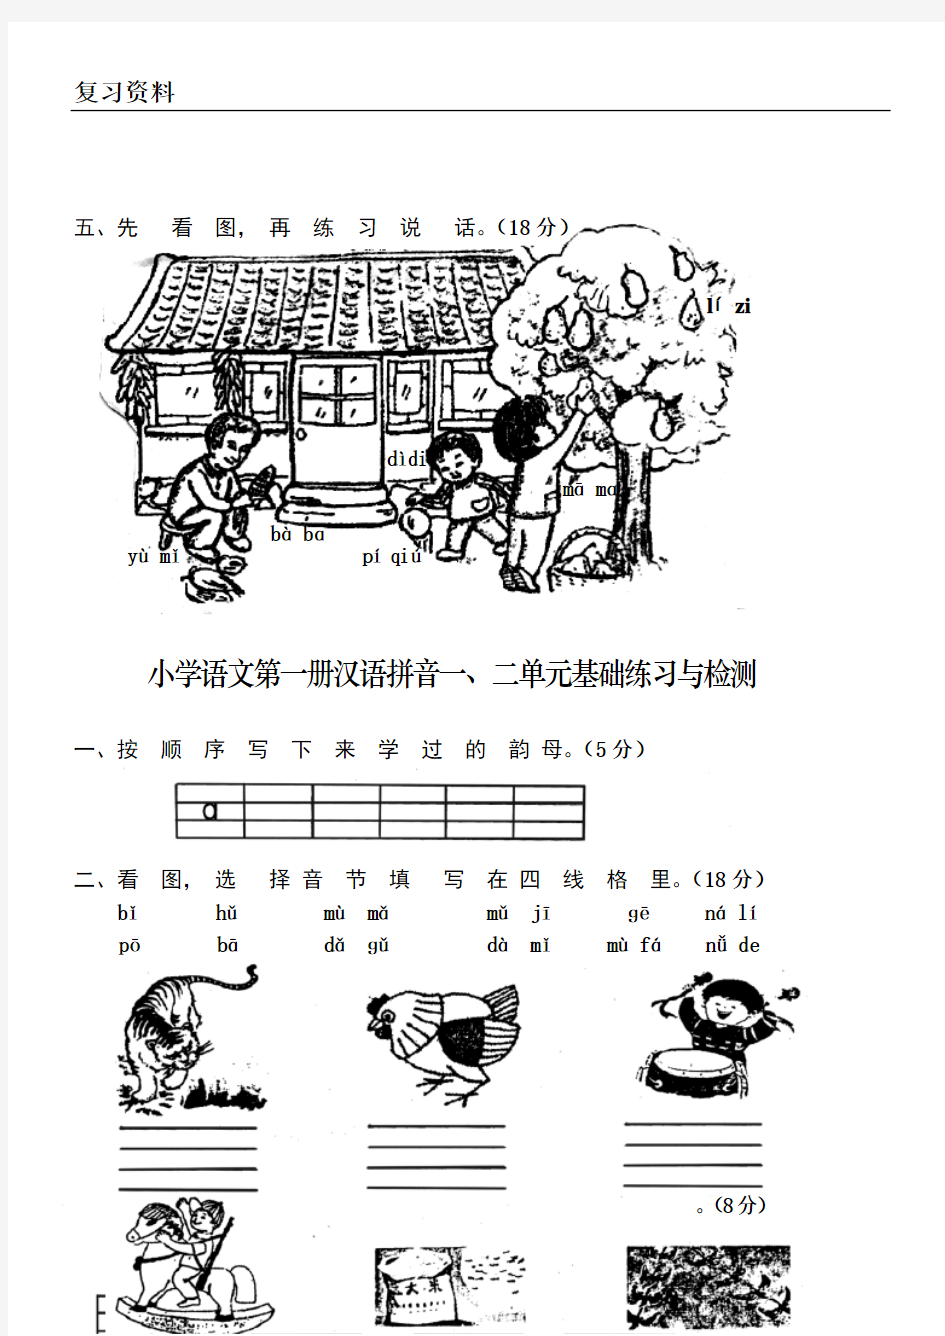 人教版小学一年级语文上册(汉语拼音)单元测试题【全套】